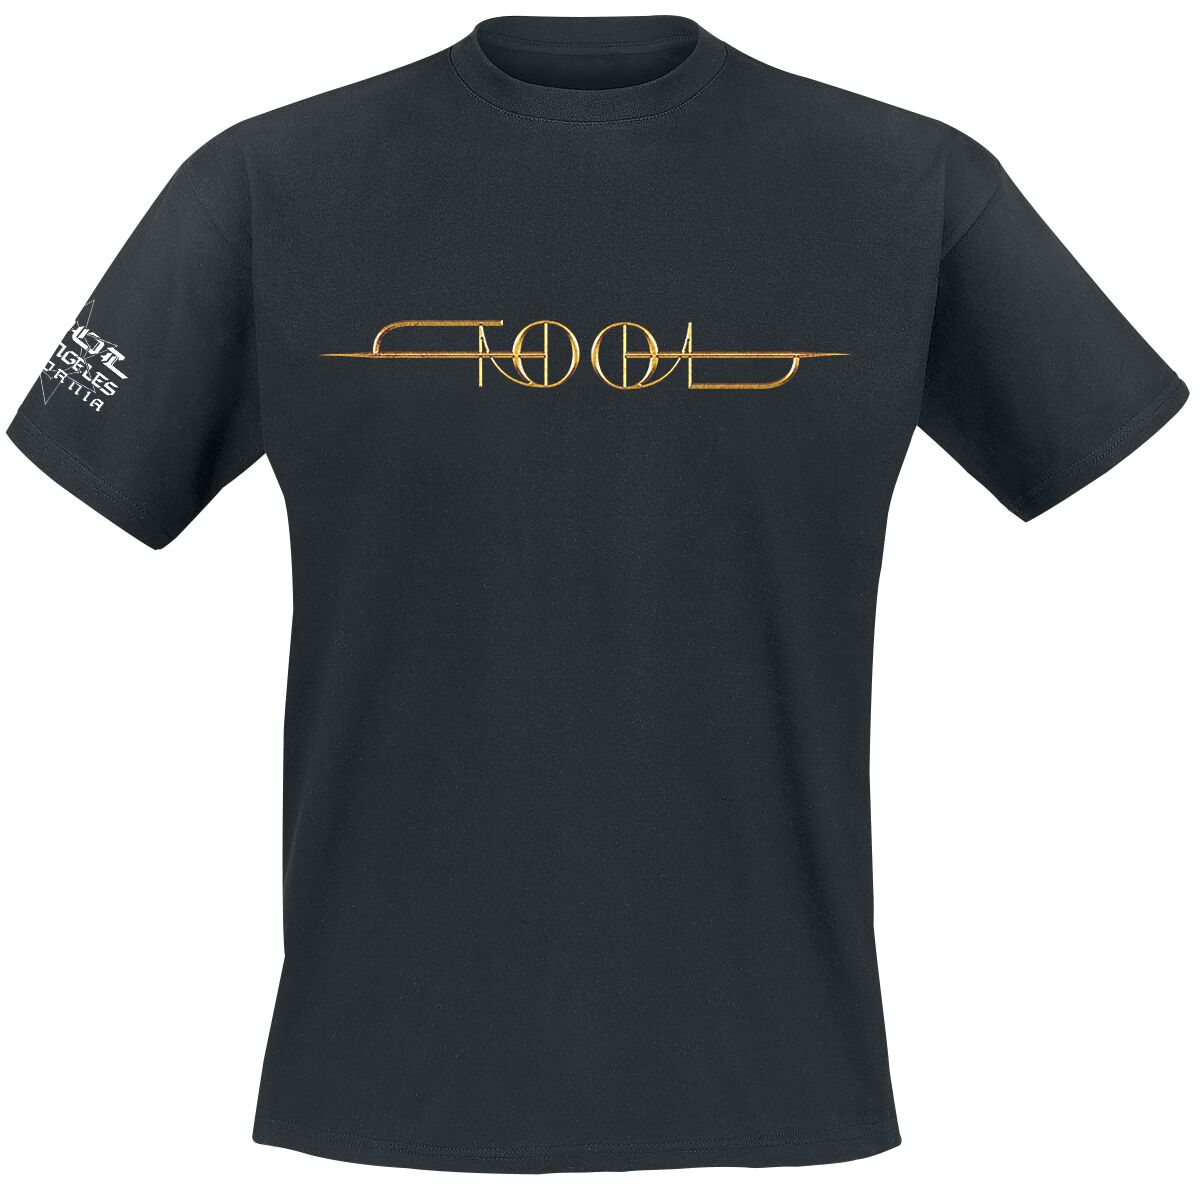 Tool T-Shirt - Double Eye Tunnel - S bis XXL - für Männer - Größe S - schwarz  - Lizenziertes Merchandise!